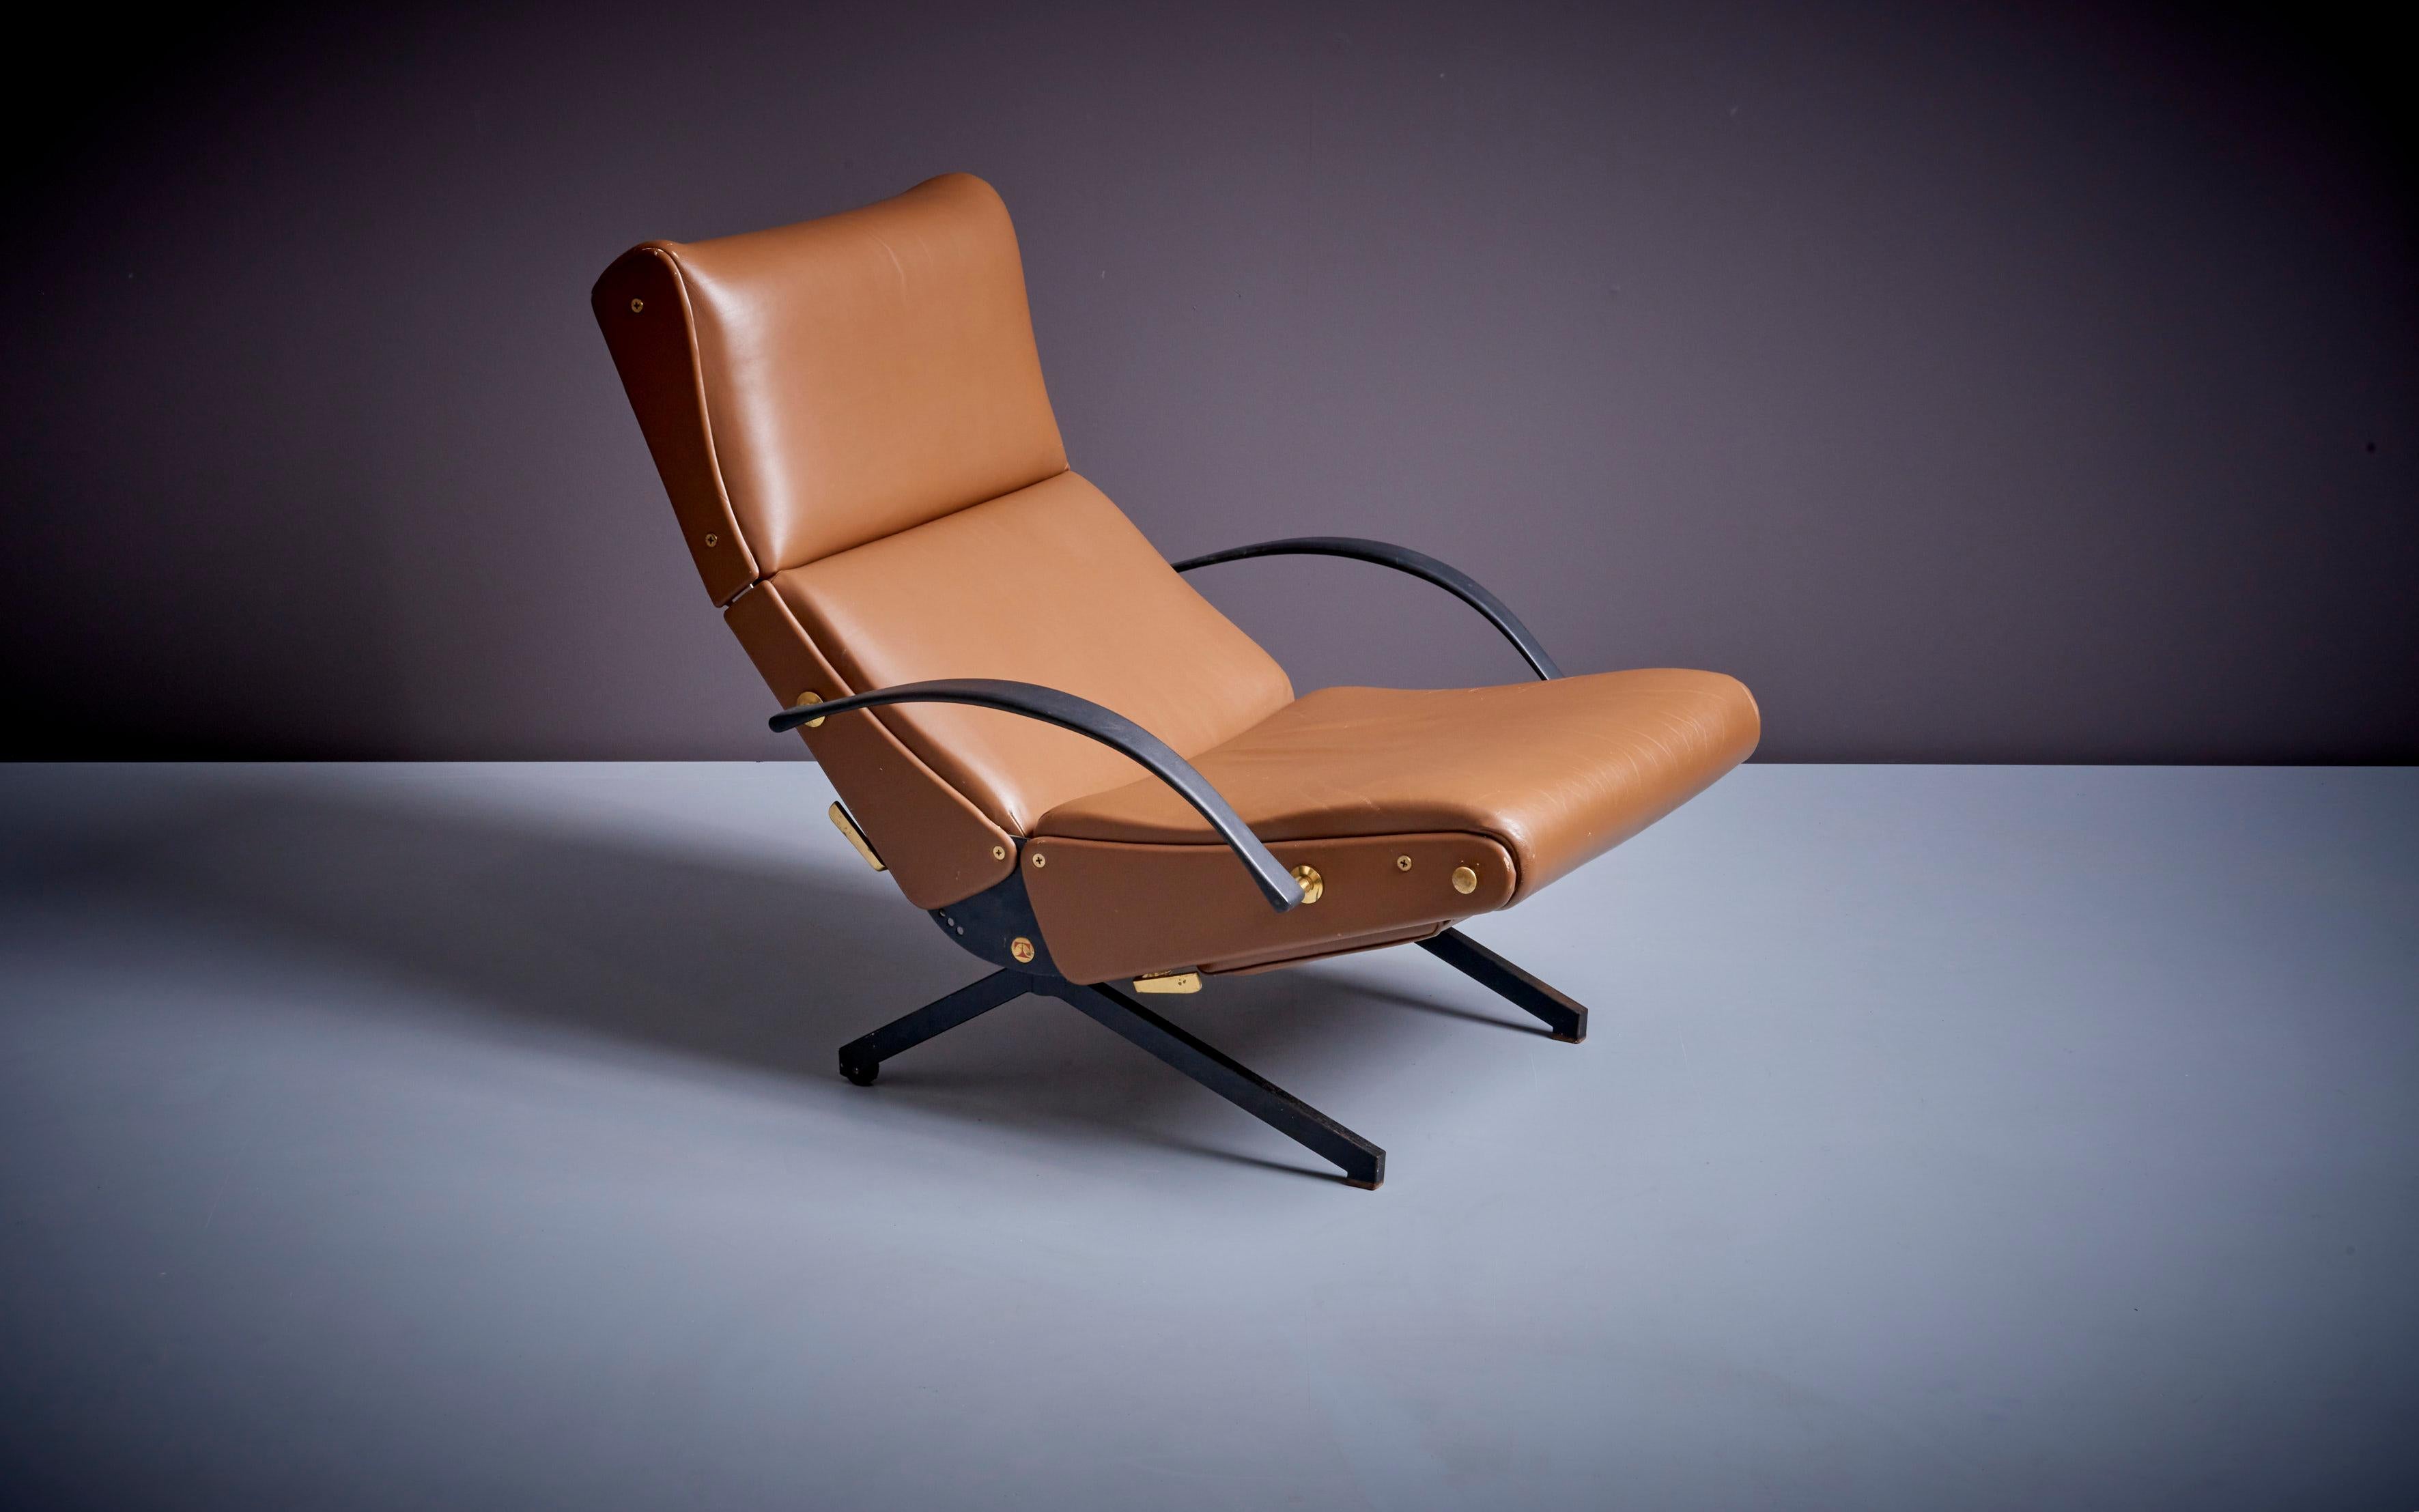 Osvaldo Borsani P40 Chaiselongue aus dickem braunem Leder mit Messingdetails und Original-Gummiarmen. Der Stuhl ist in sehr gutem Zustand.

